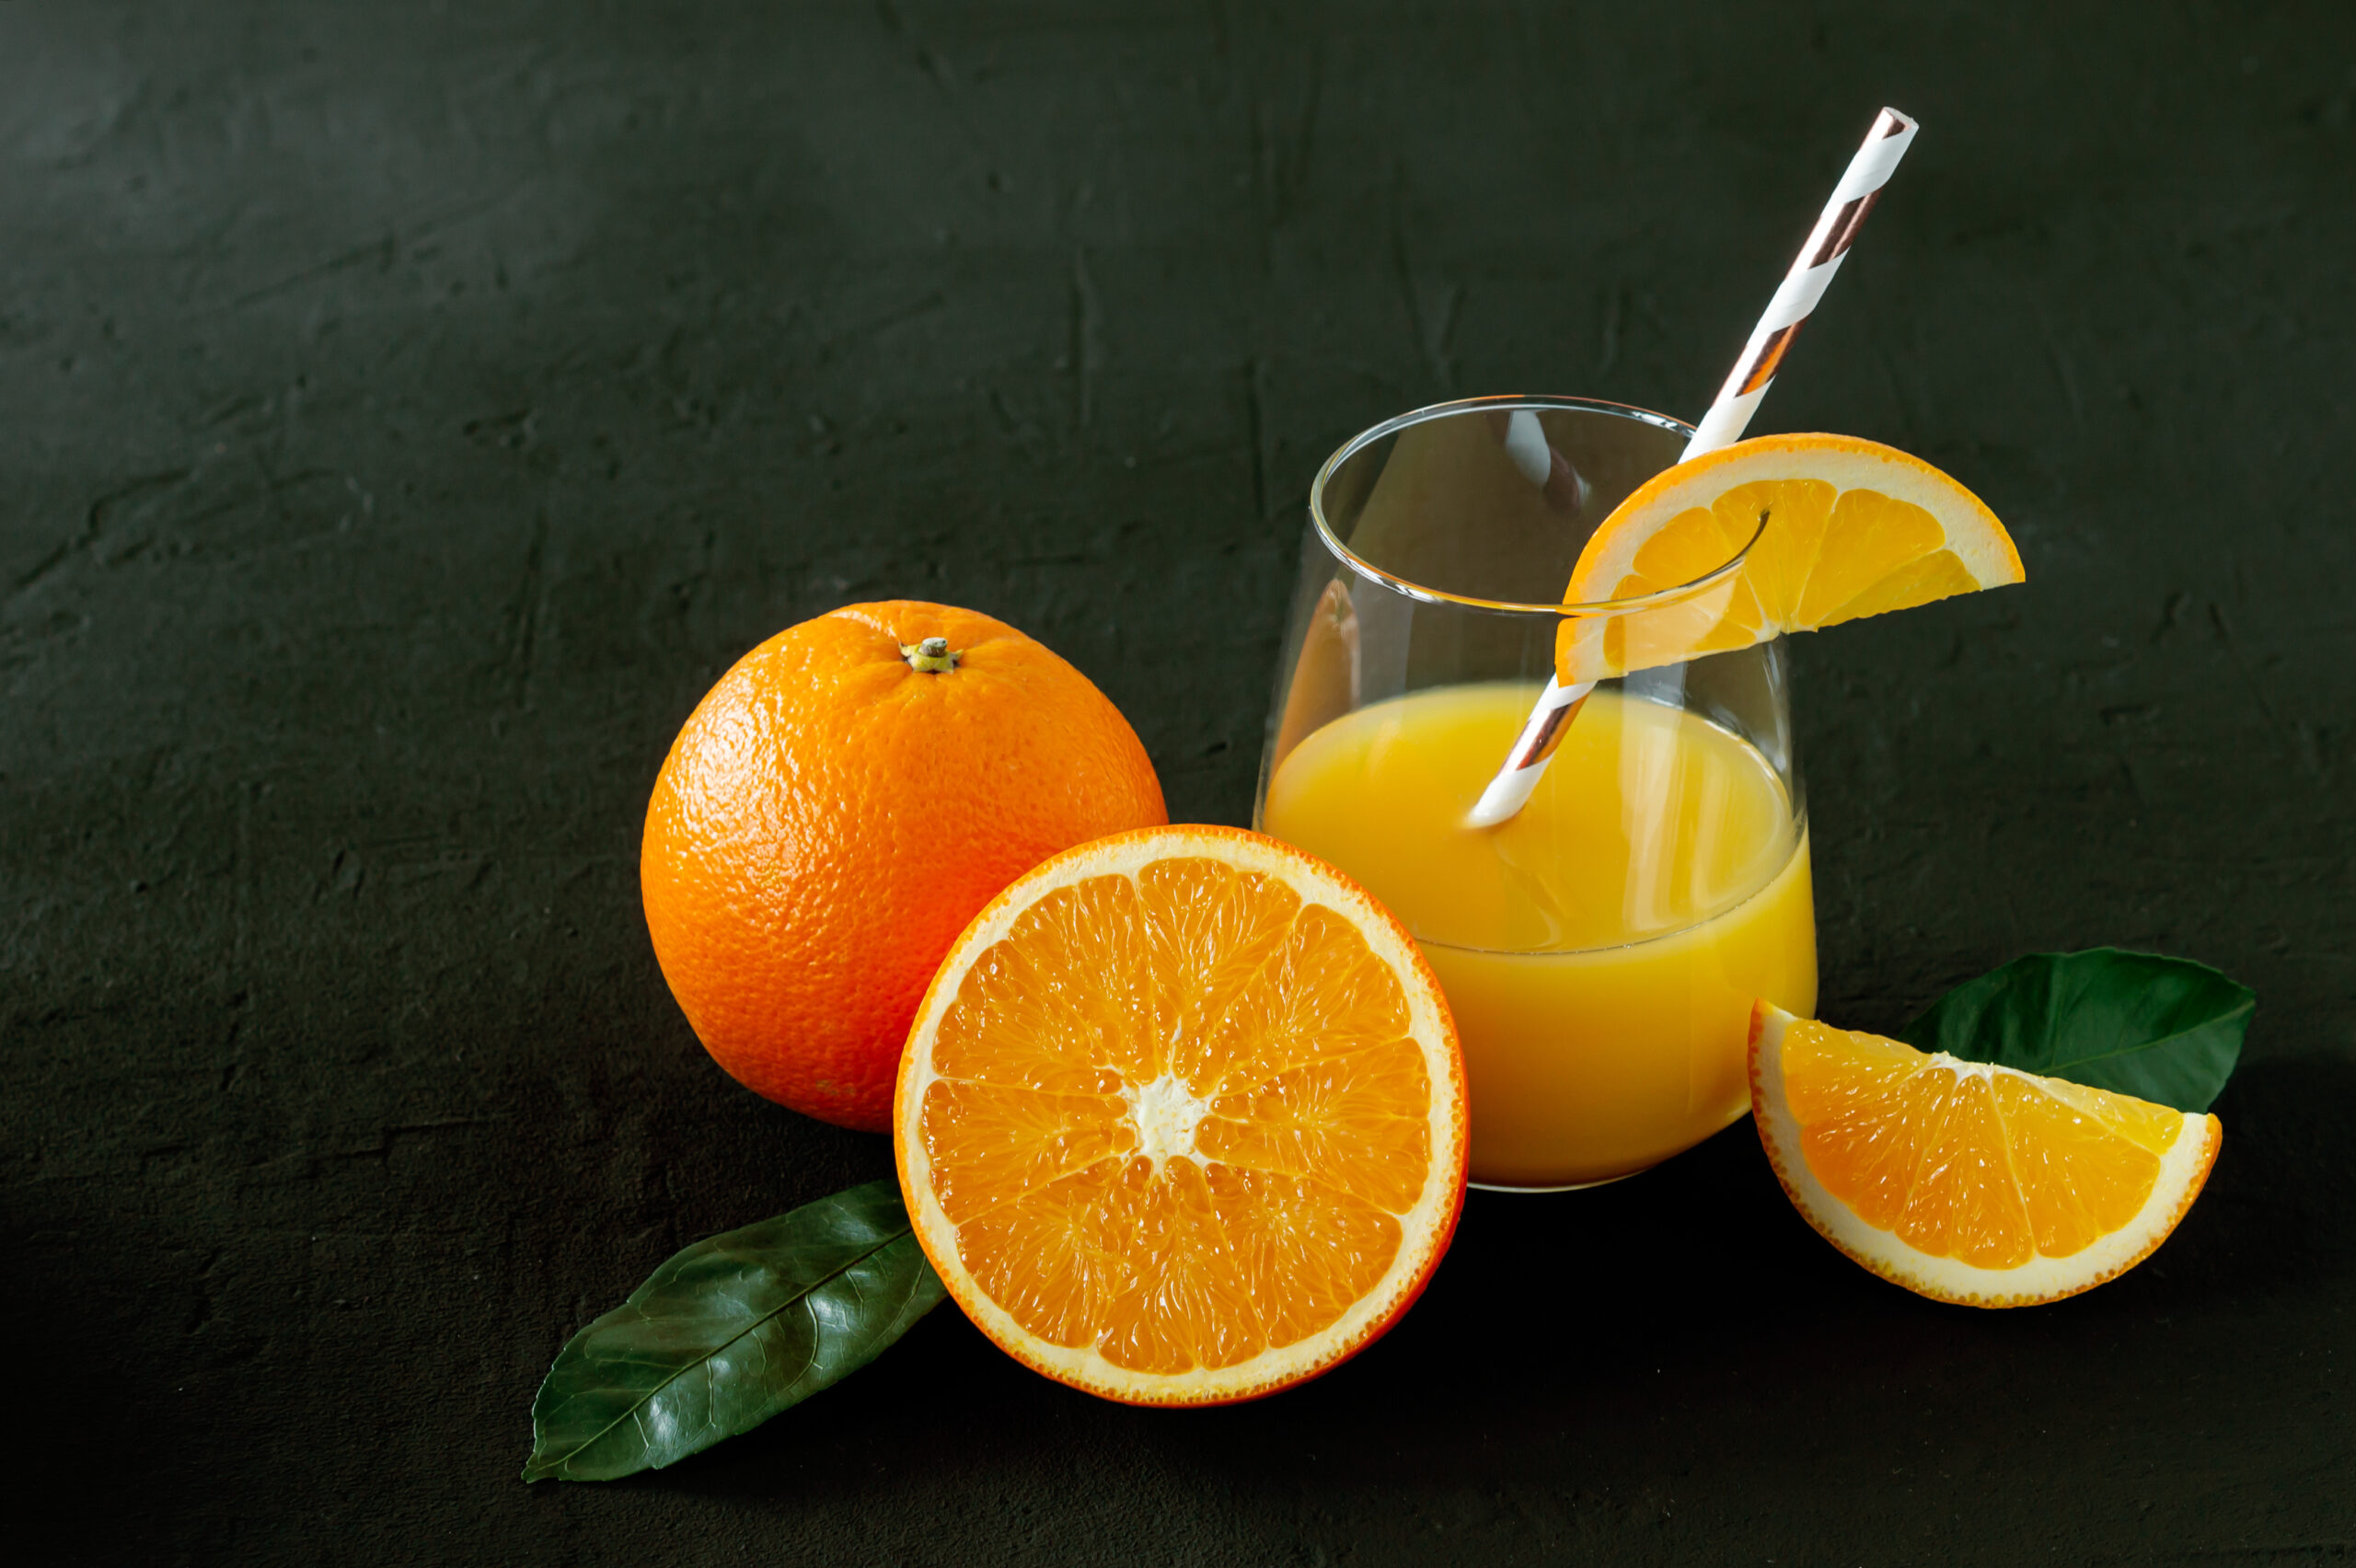 Na obrazku widoczny jest sok pomarańczowy, idealny do wsparcia w leczeniu gruczolaka nadnerczy. Świeżo wyciśnięty sok jest intensywnie pomarańczowy i pełen witamin, które mogą wspomóc zdrowie nadnerczy. Jego orzeźwiający smak i naturalne składniki odżywcze stanowią doskonałe wsparcie dla organizmu i mogą przyczynić się do poprawy kondycji pacjenta